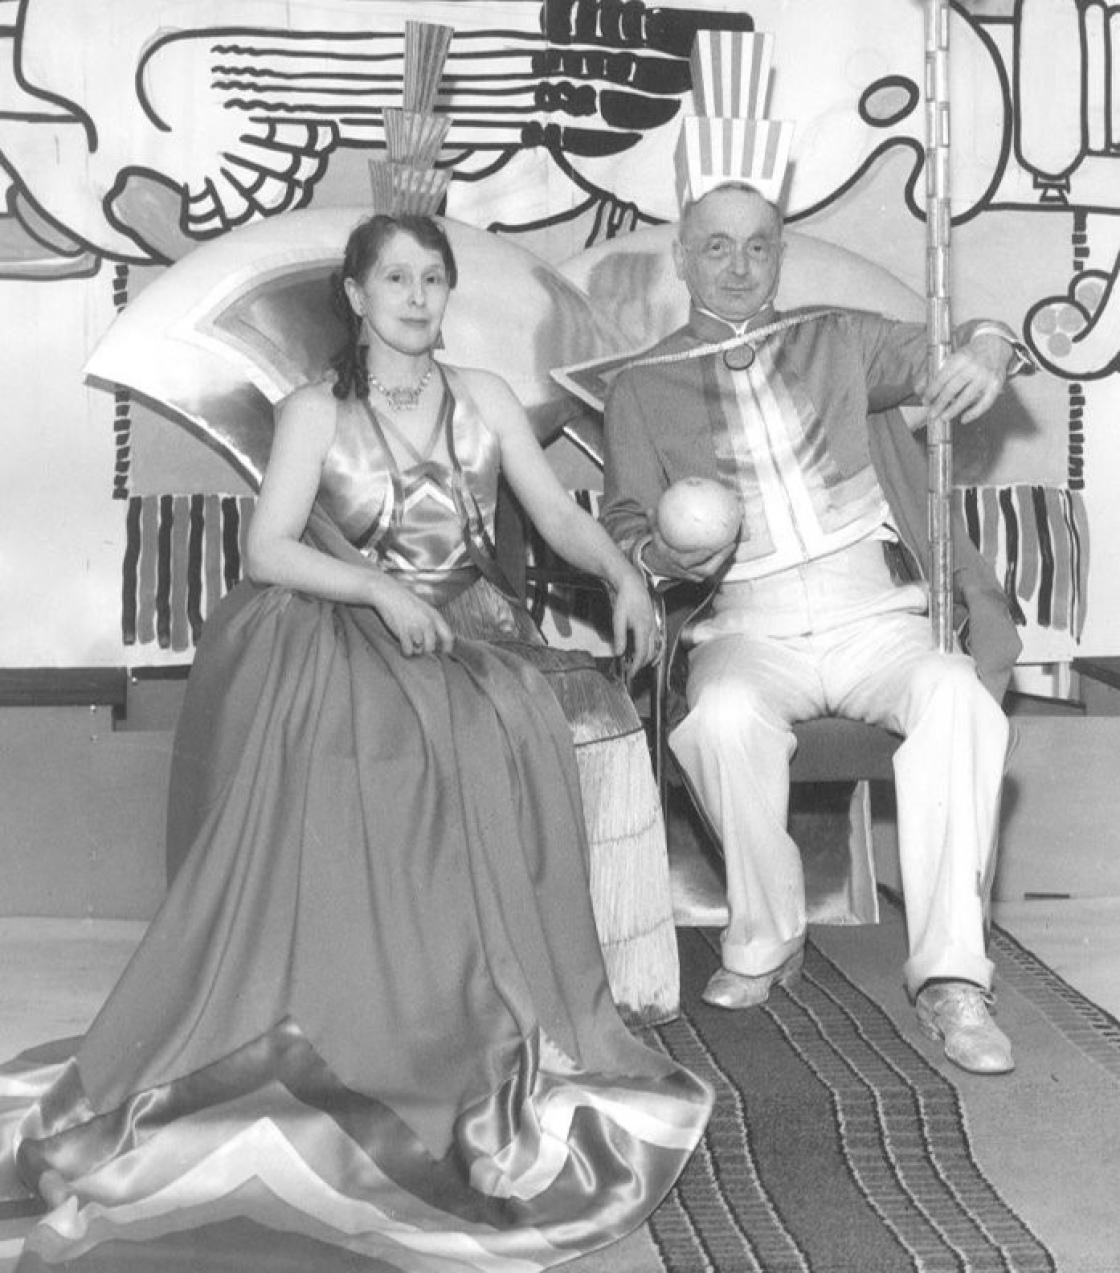 Photograph of Loja and Eliel Saarinen in celebration costumes